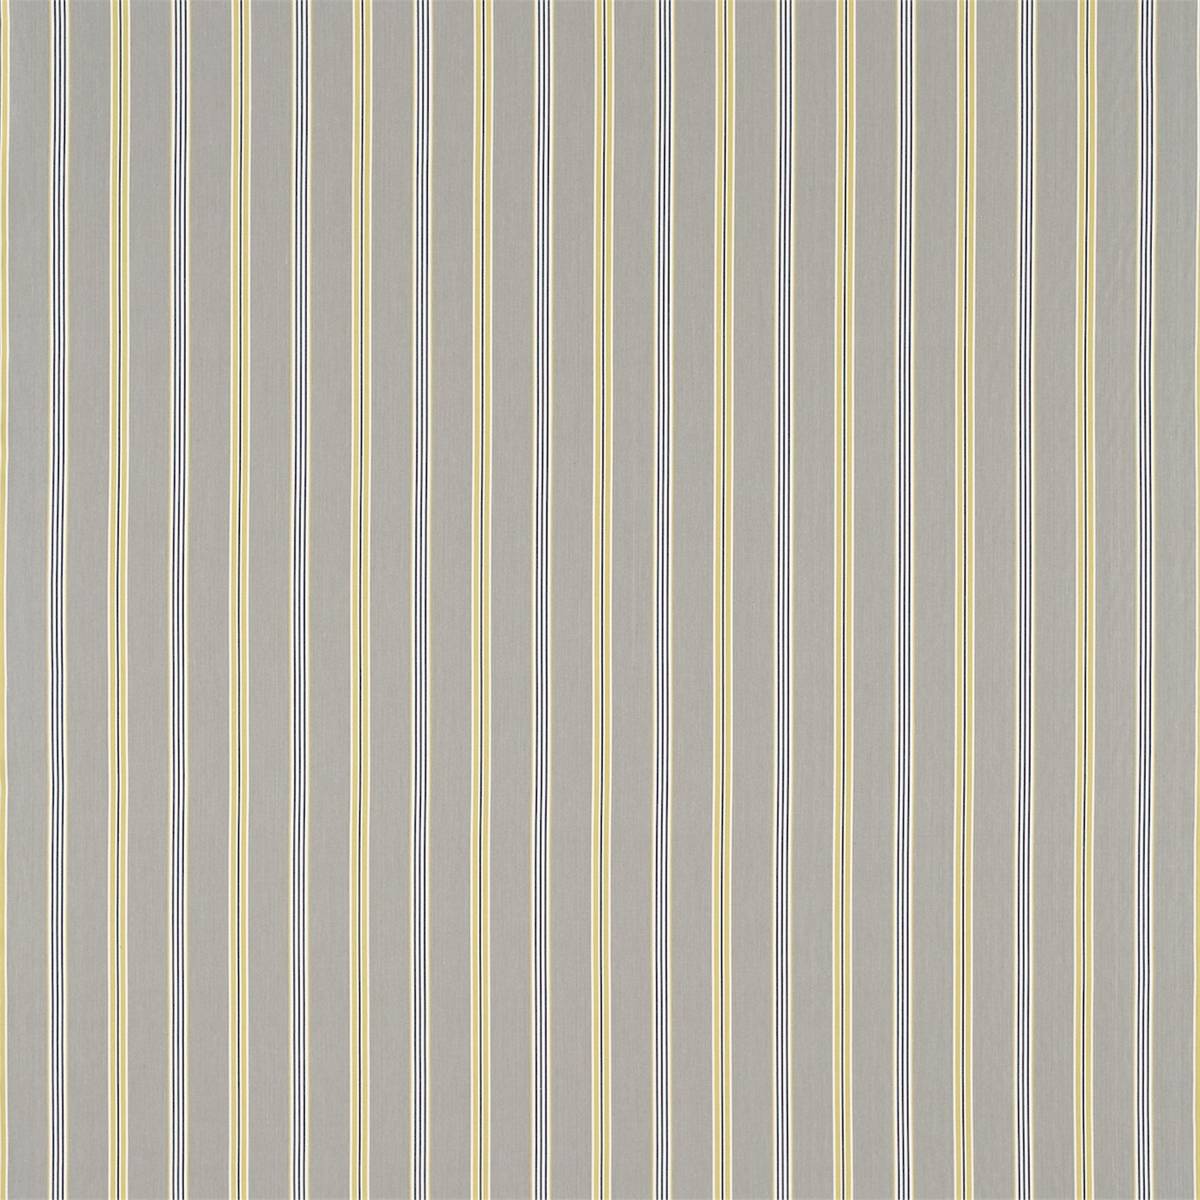 Brecon Dove/Yellow Fabric by Sanderson